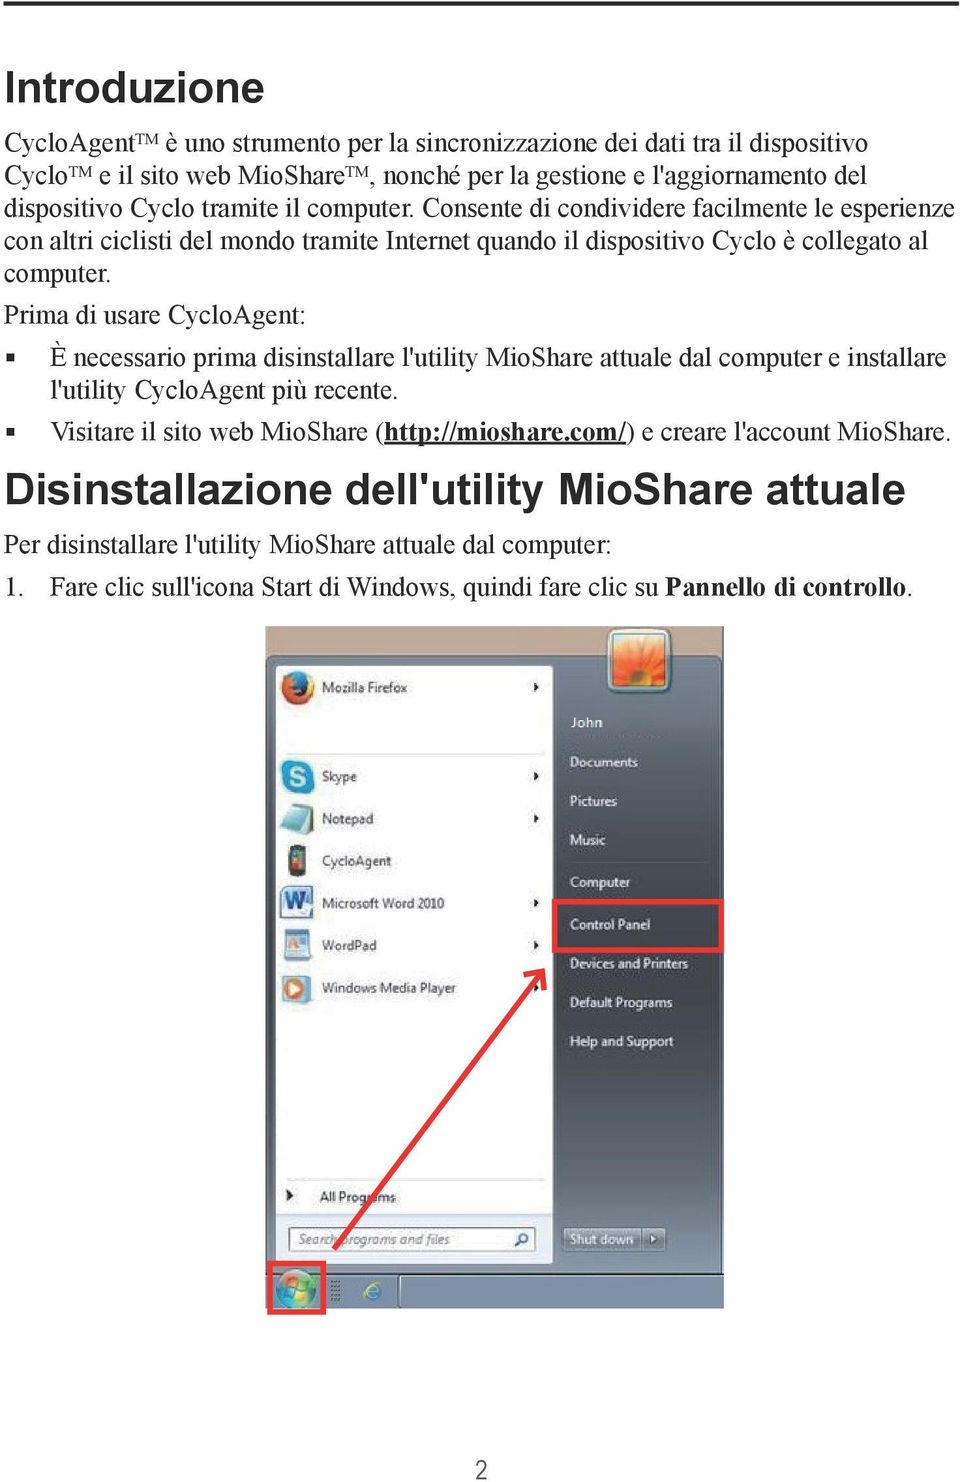 Prima di usare CycloAgent: È necessario prima disinstallare l'utility MioShare attuale dal computer e installare l'utility CycloAgent più recente. Visitare il sito web MioShare (http://mioshare.